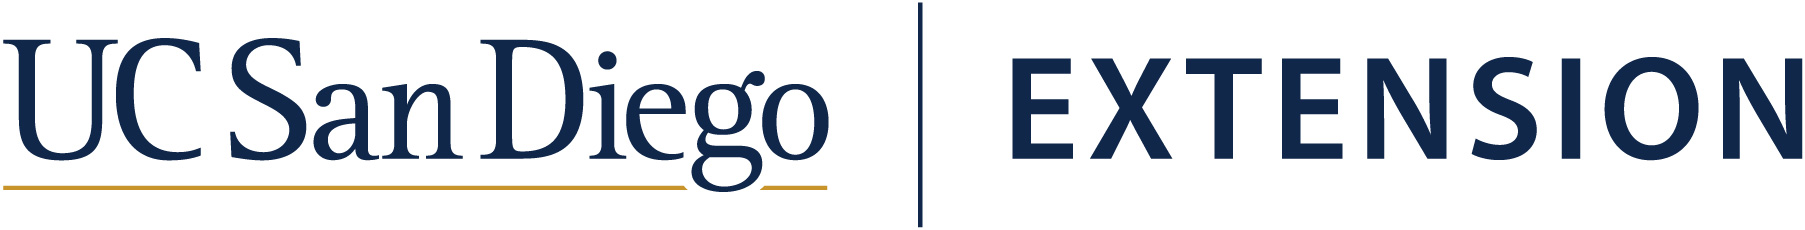 extension-logo-2021.jpg